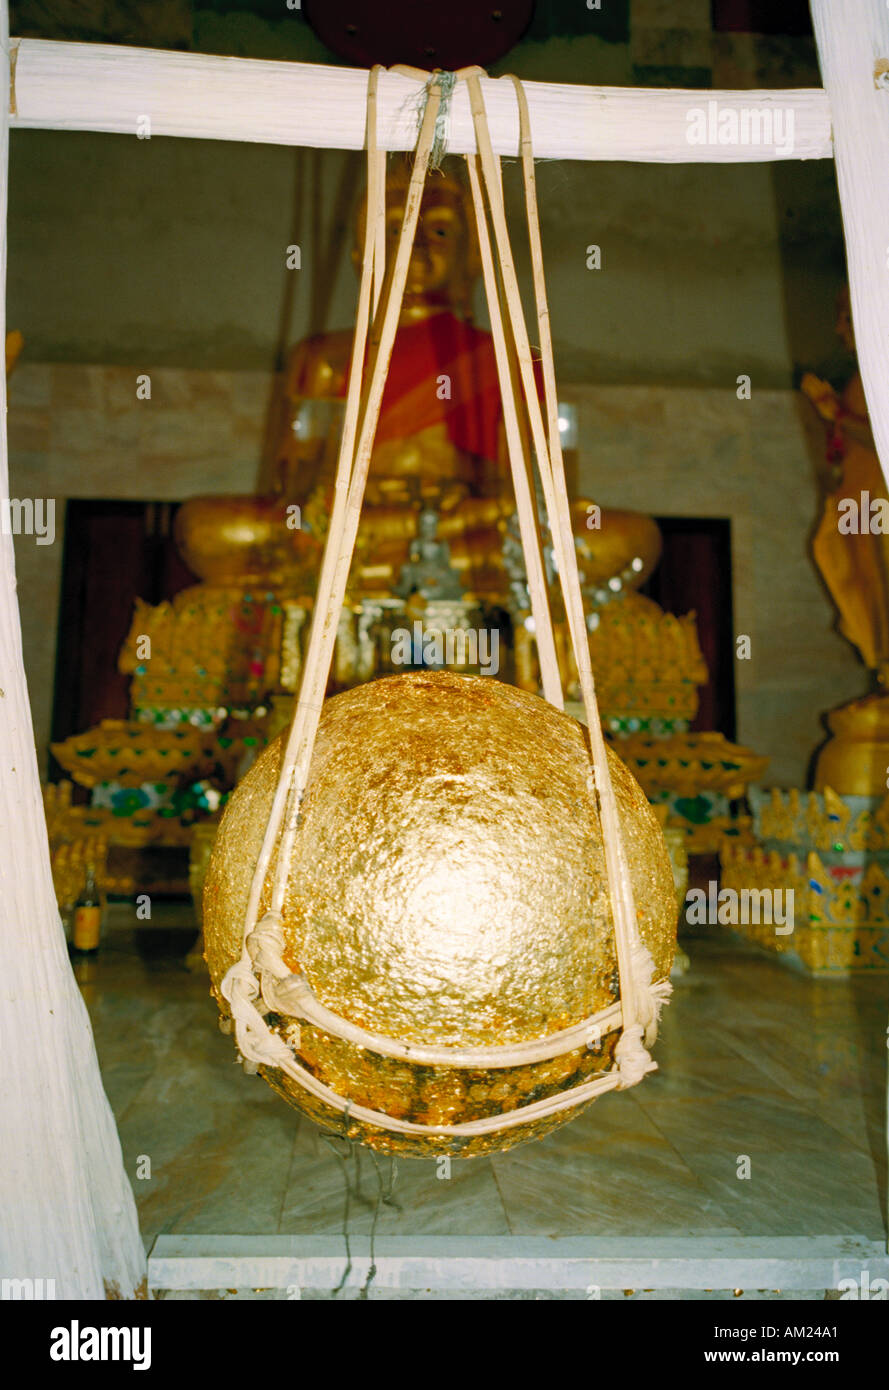 Rendendo merito mediante incollaggio foglia oro su una sfera sospesa è il metodo di supplica dai pellegrini presso alcuni Wats in Thailandia Foto Stock